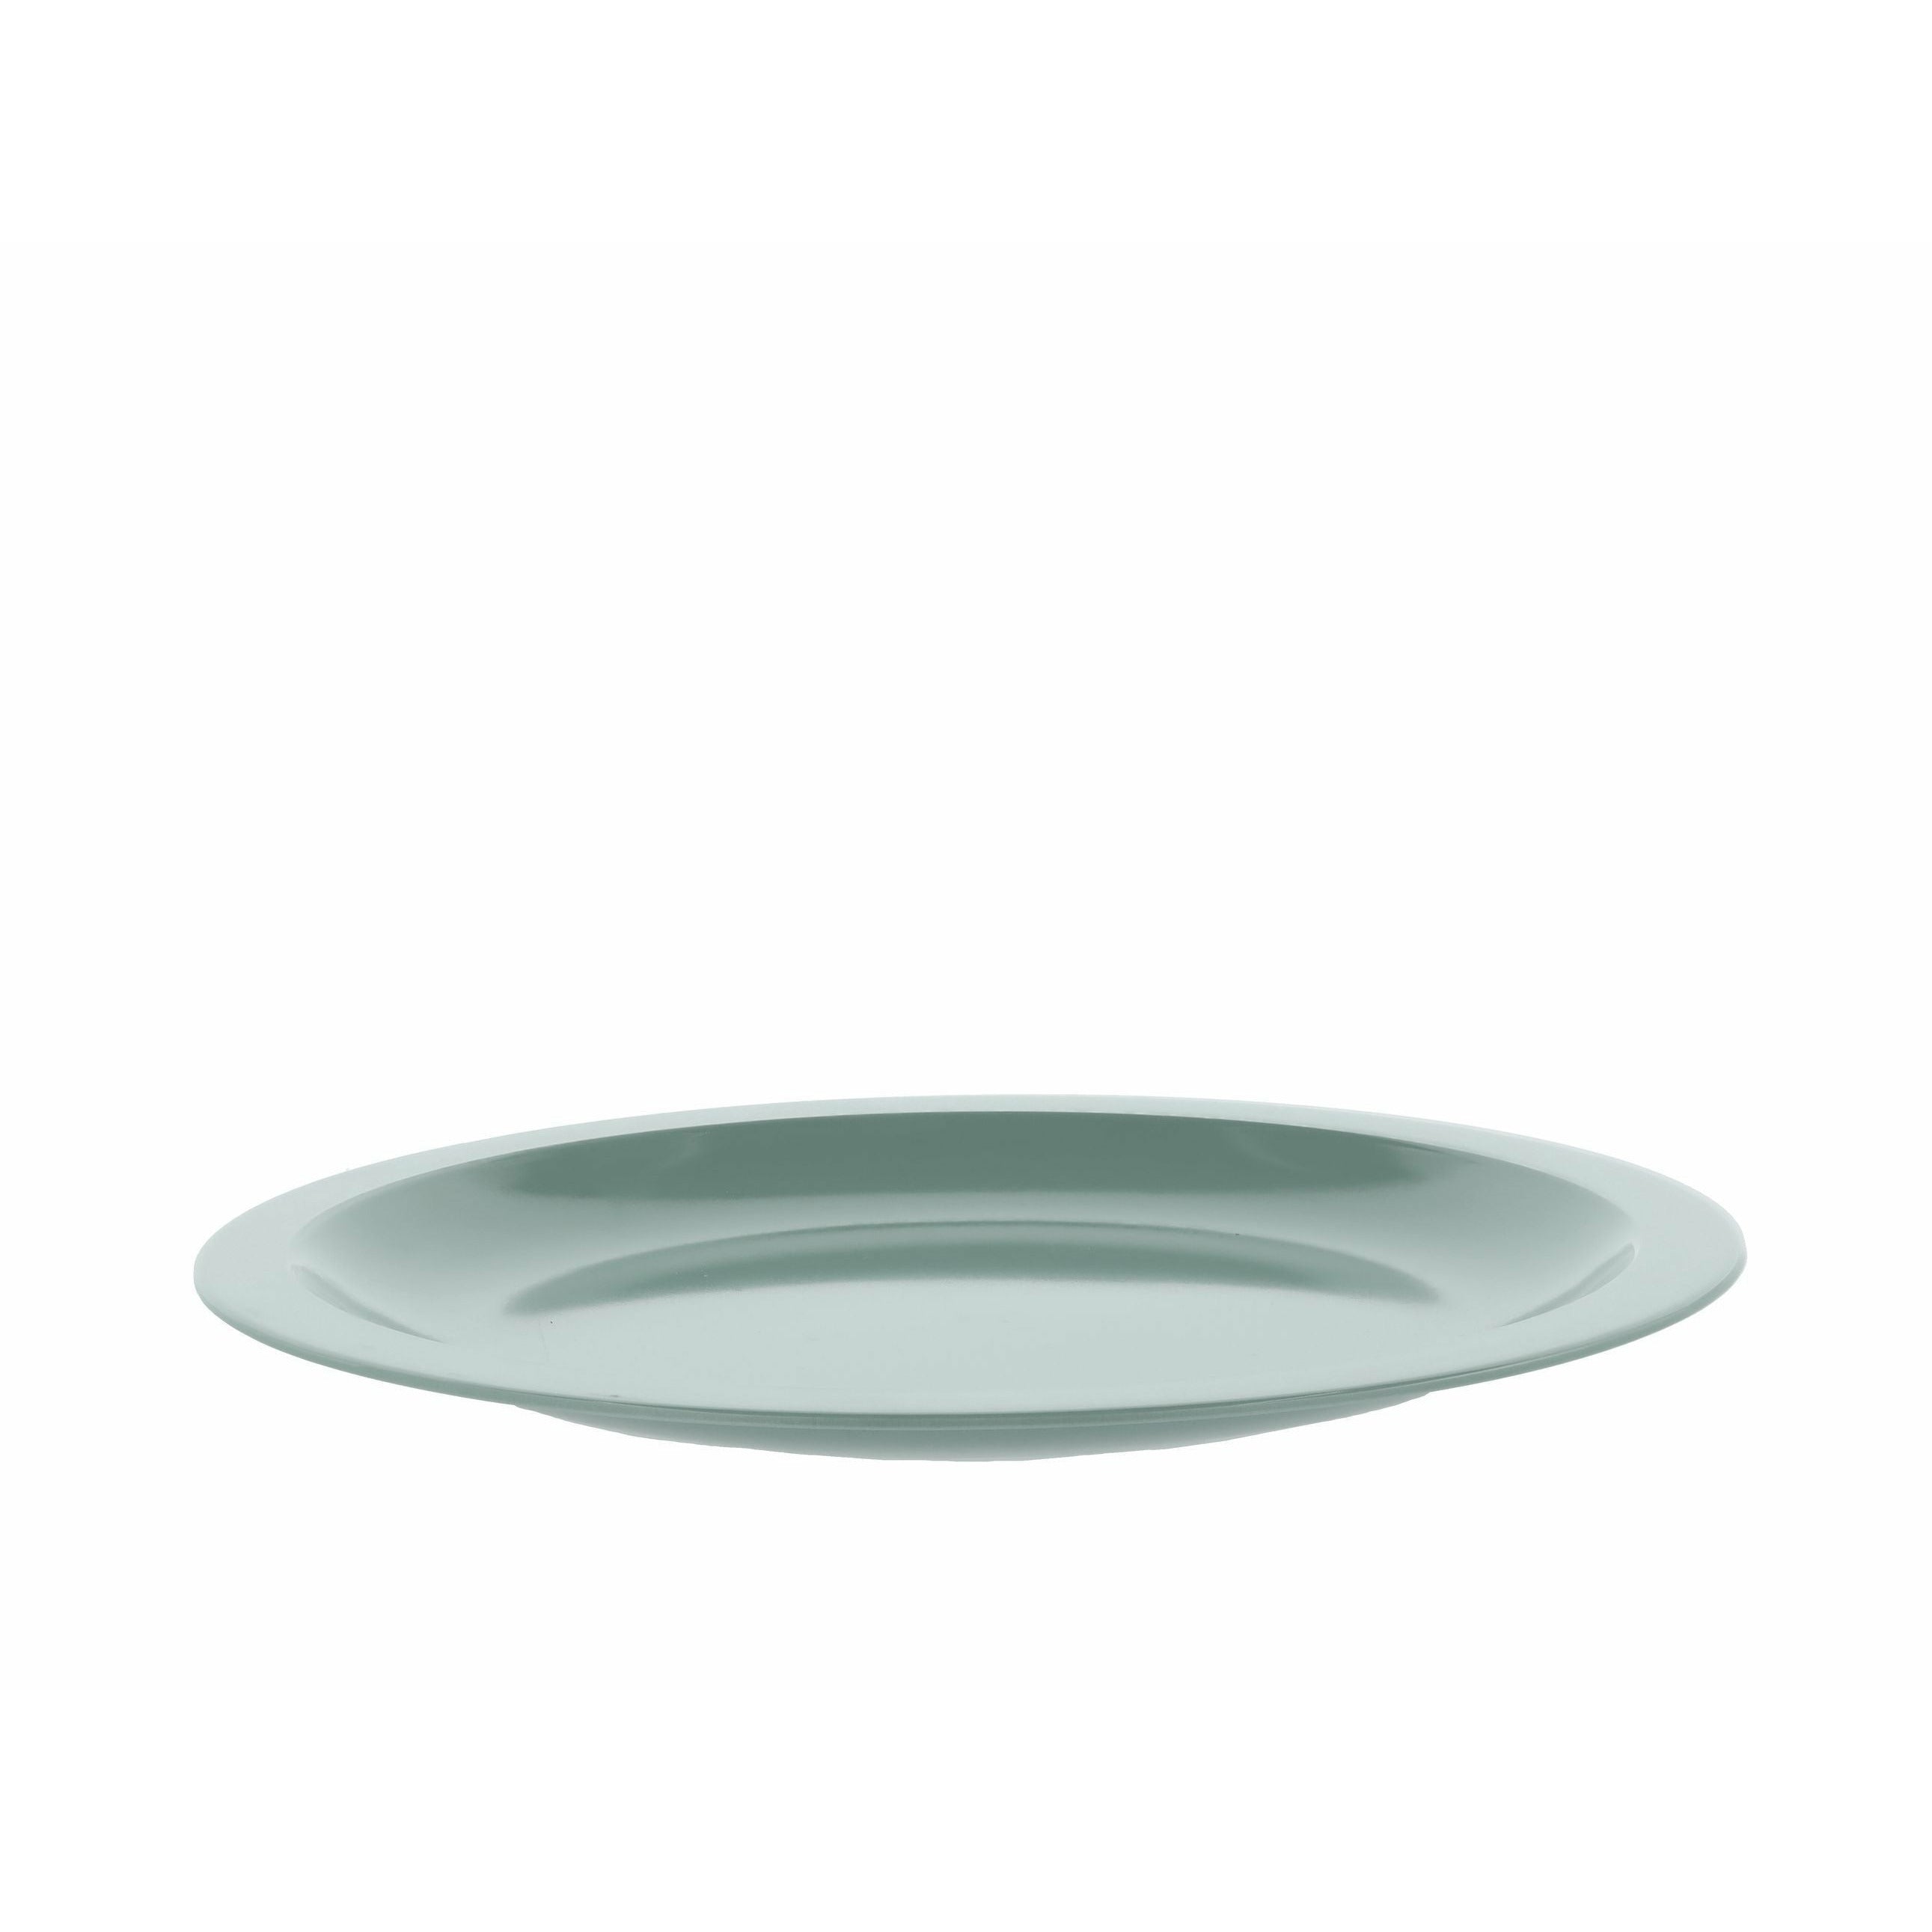 Rosti Hamlet Dinner Plate, Nordic Green